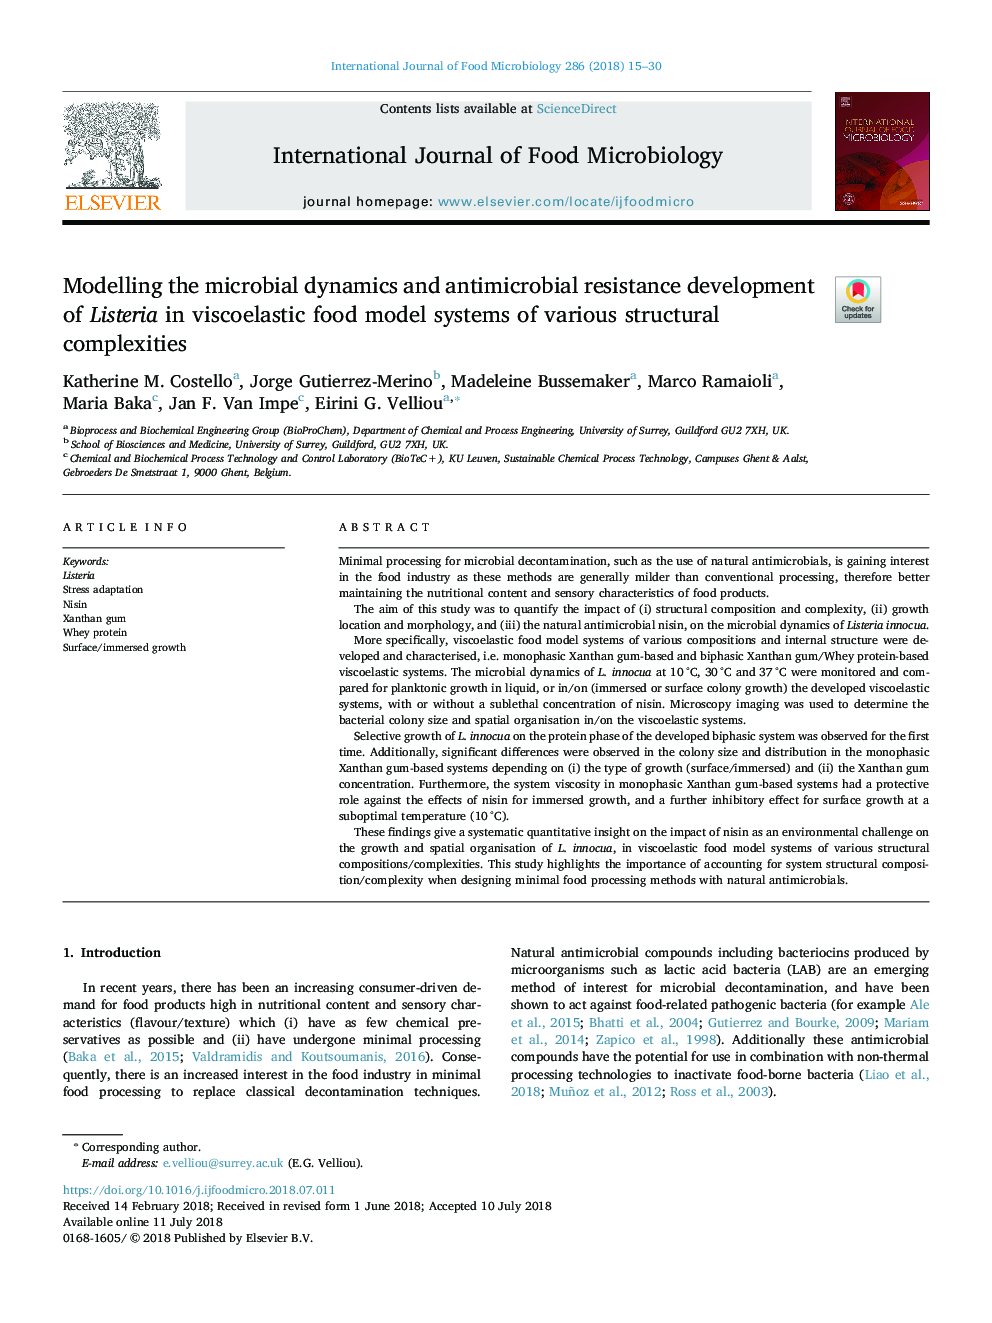 مدل سازی دینامیک میکروبی و توسعه مقاومت ضد میکروبی لیستریا در سیستم های مدل غذای ویسکوالاستیک از پیچیدگی های ساختاری مختلف 